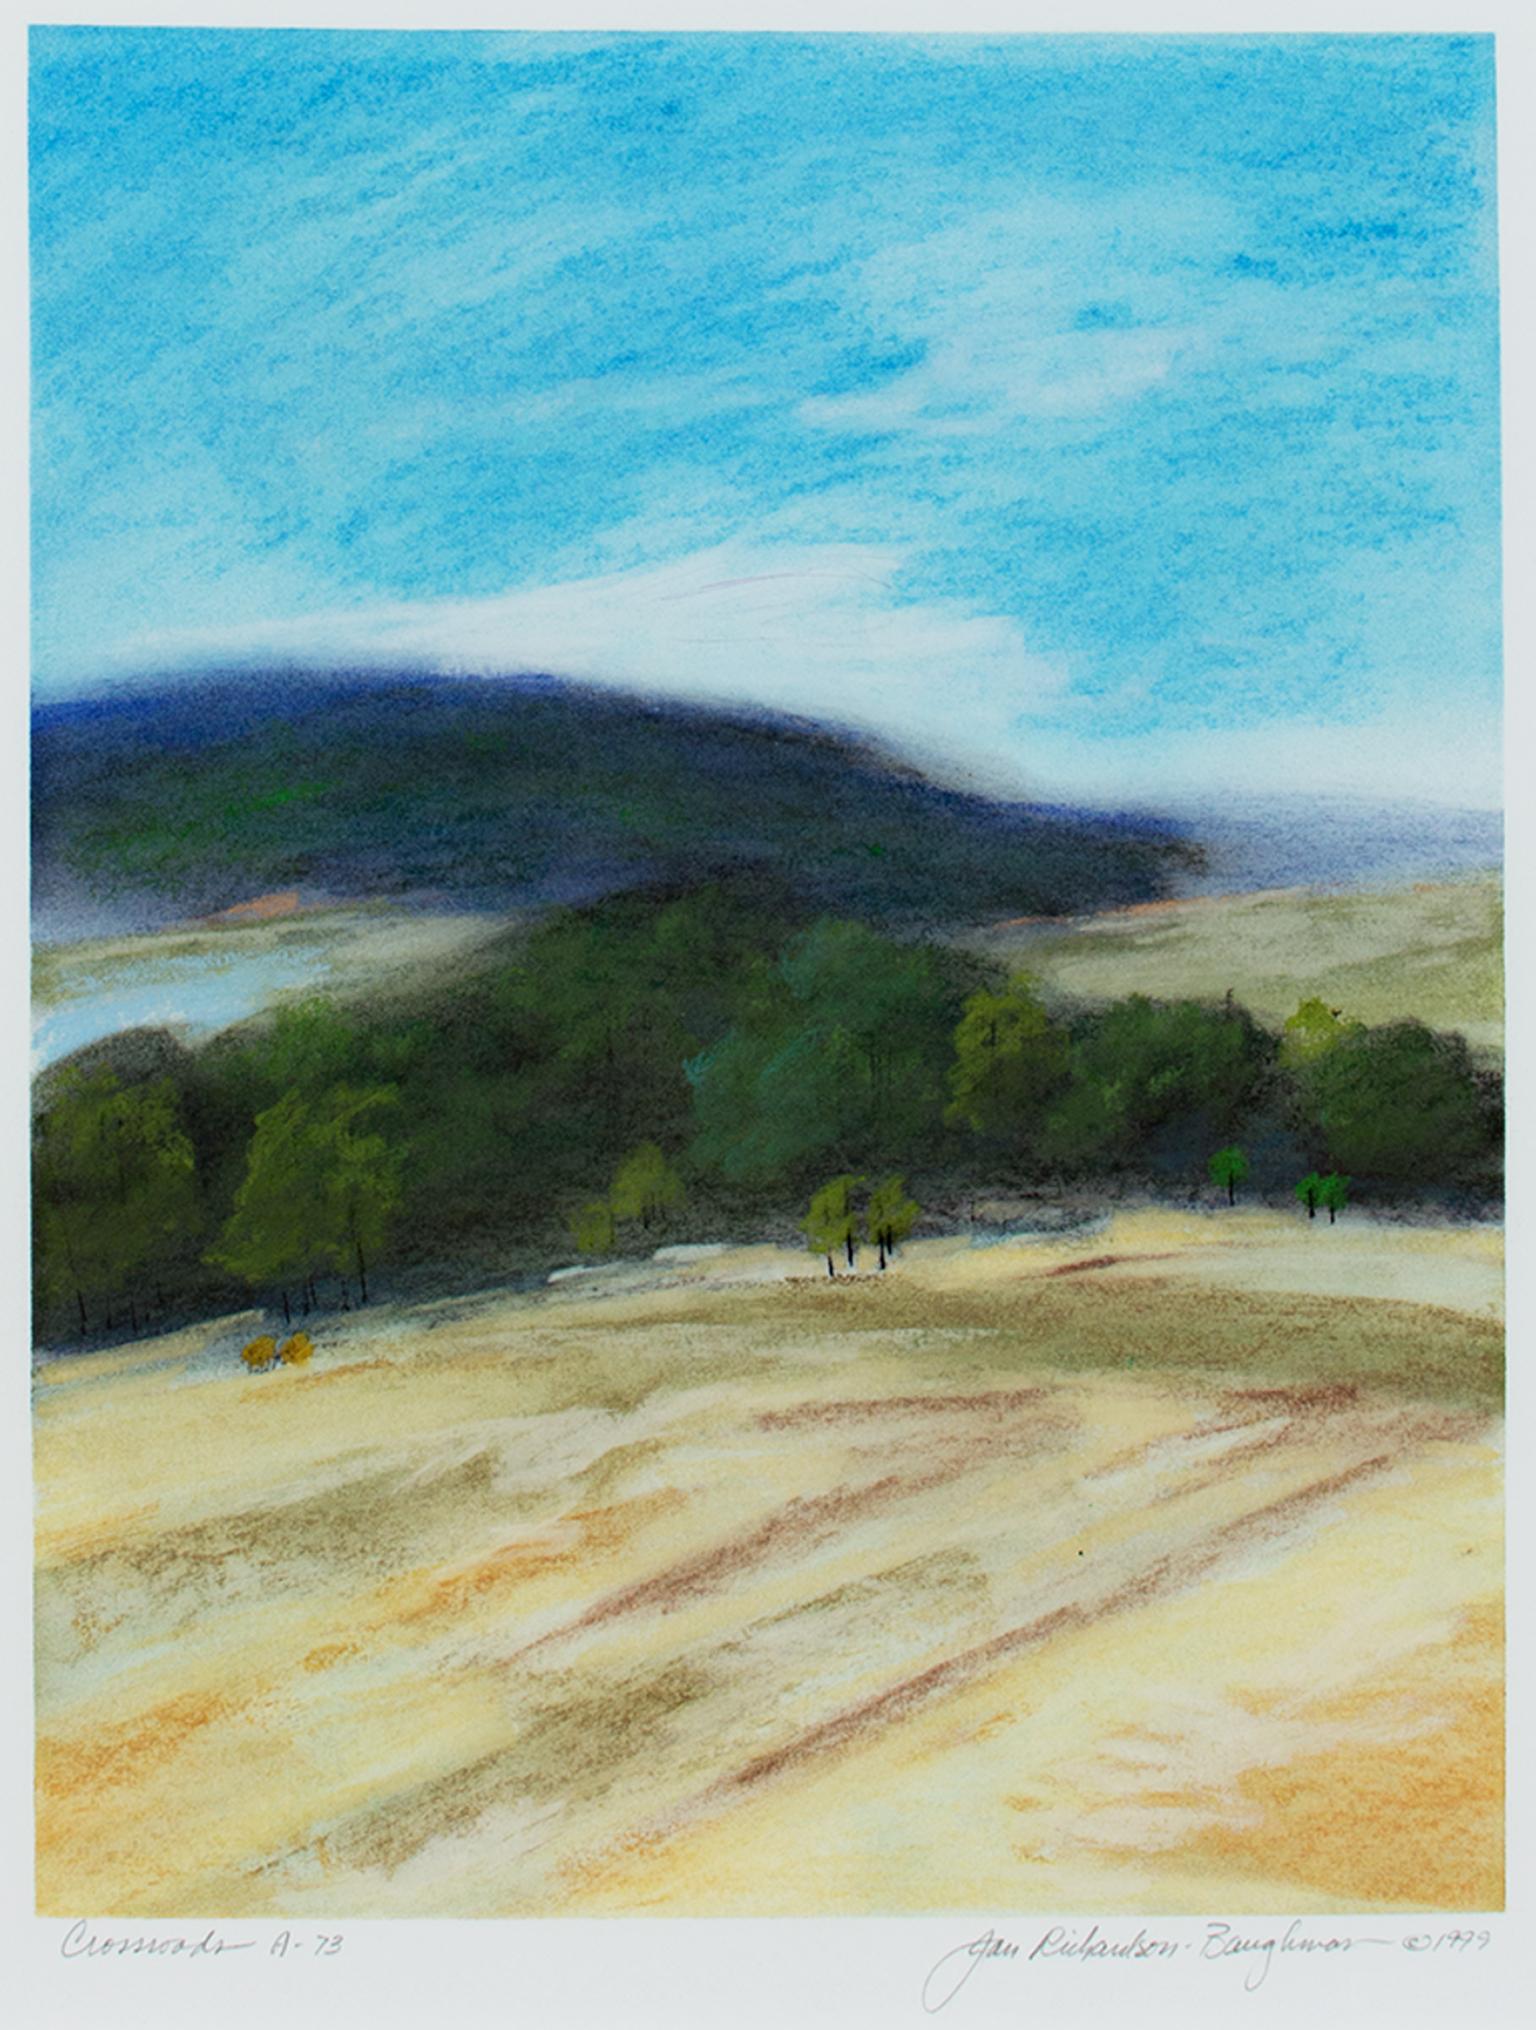 "Crossroads A-73", Paysage de Hazy Pastel signé par Jan Richardson-Baughman